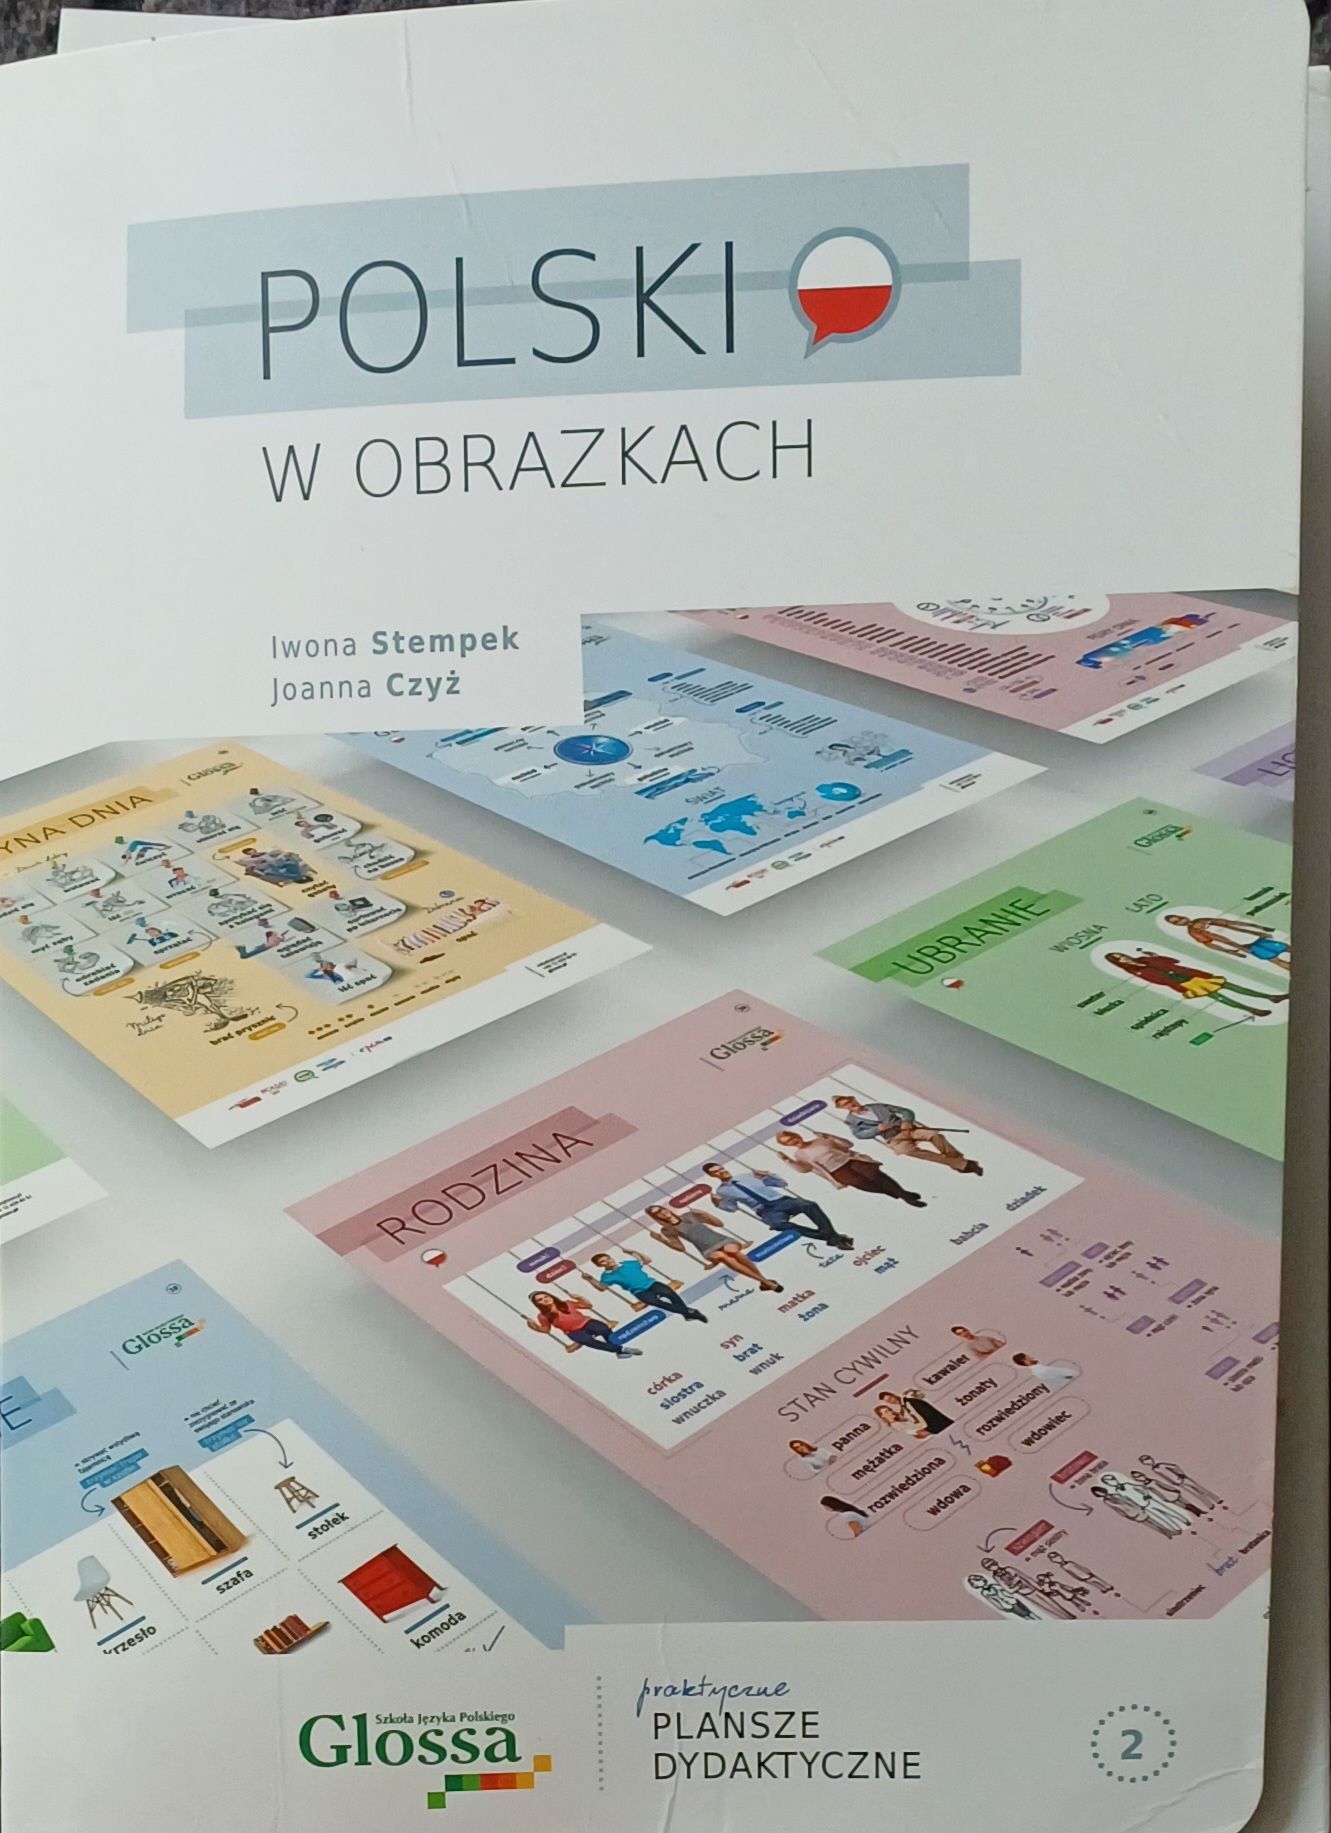 Polski w obrazkach - plansze dydaktyczne